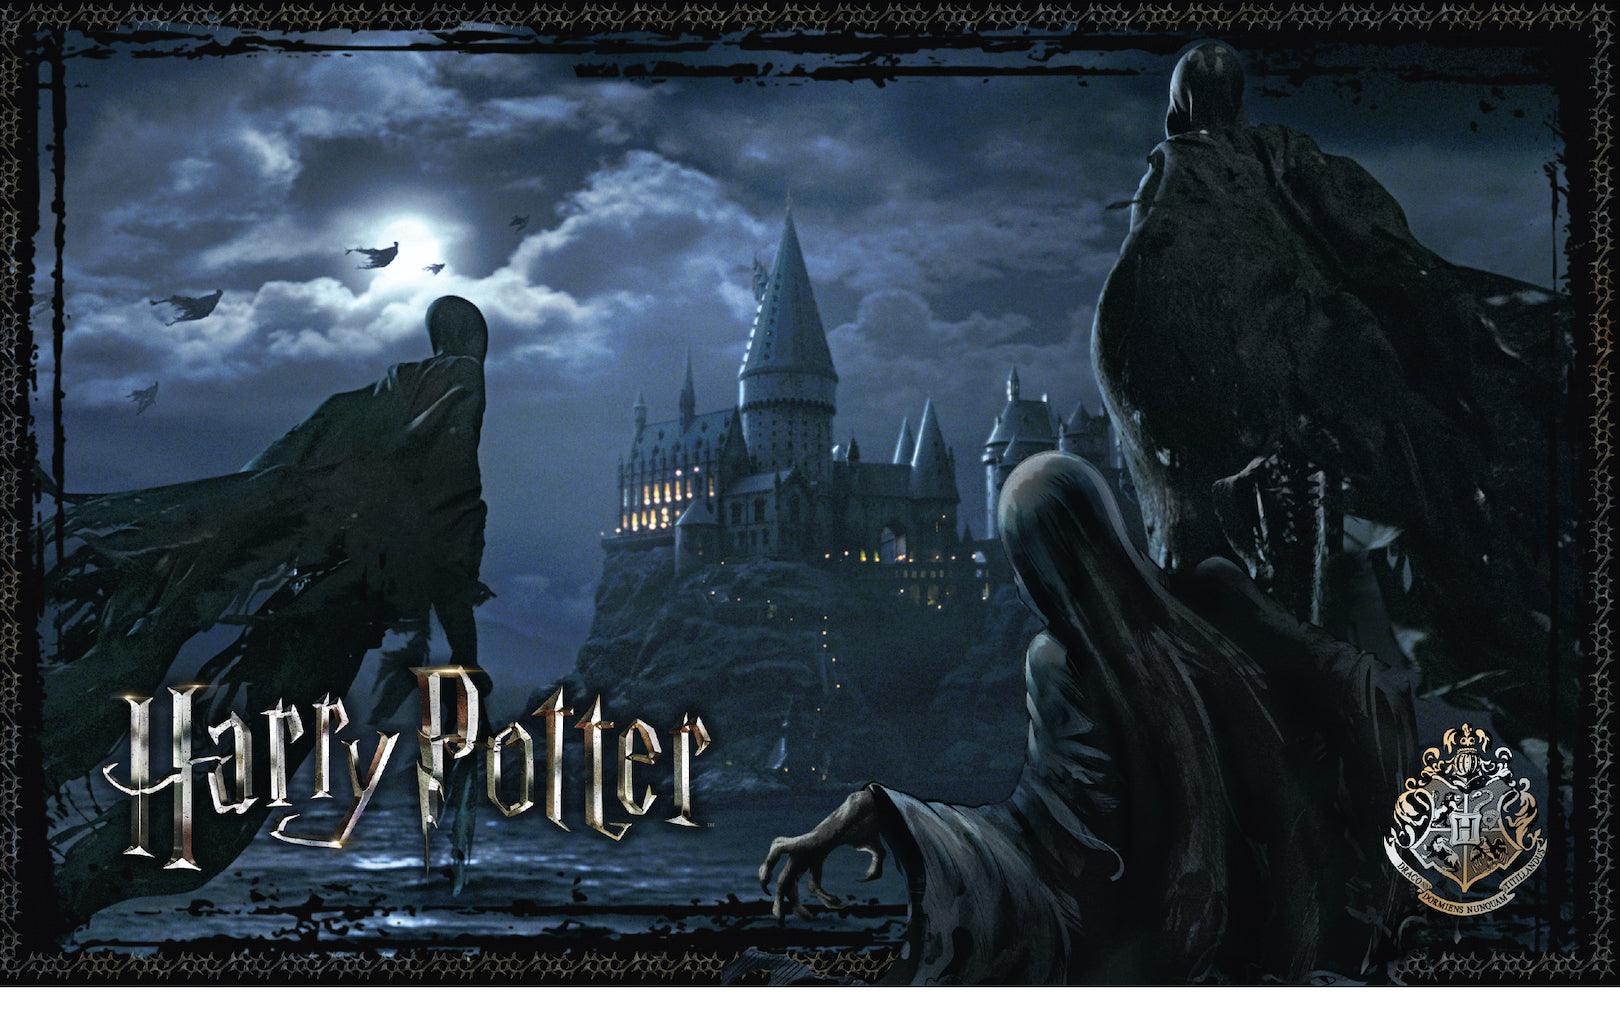 Harry Potter - Puzzle 1000 pièces - Harry Potter et les sorciers